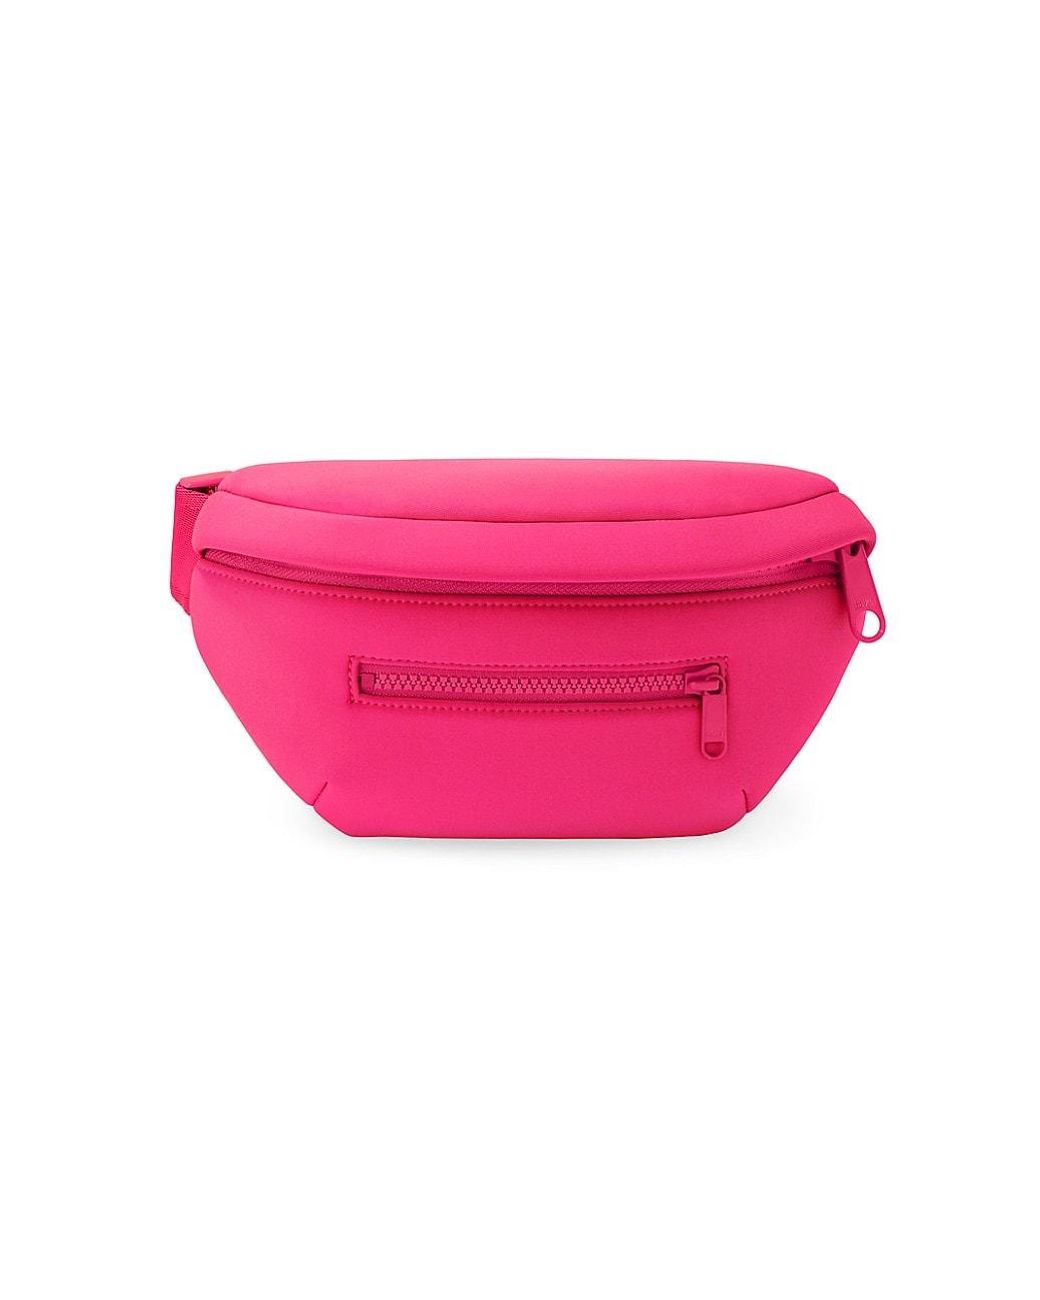 Dagne Dover Large Landon Carryall Bag, Hottest Pink